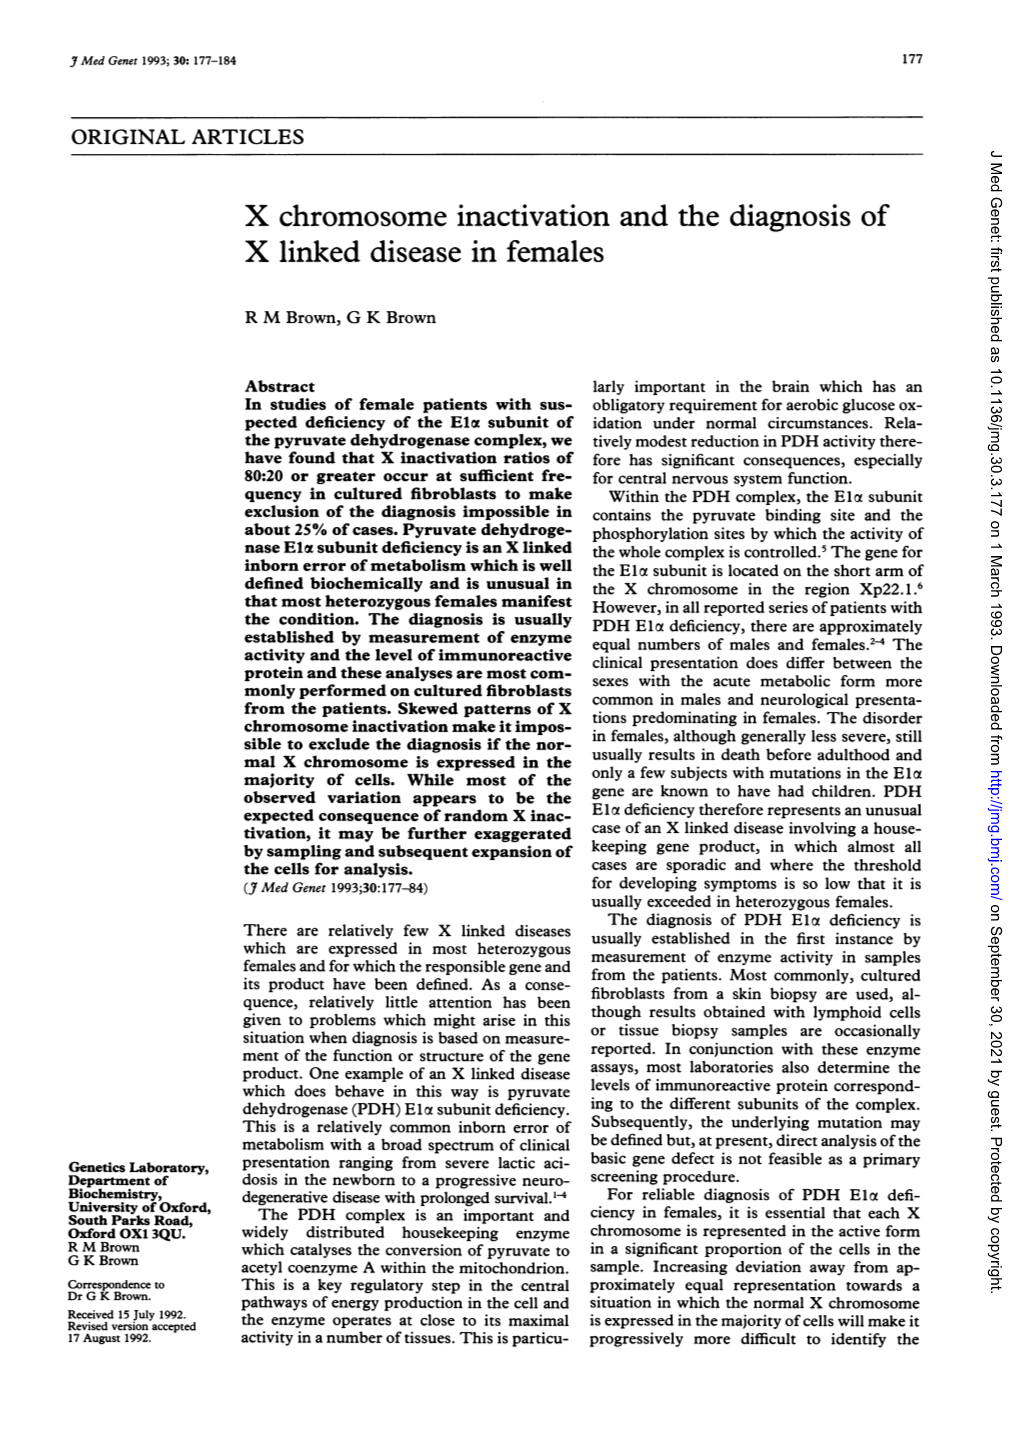 X Linked Disease in Females